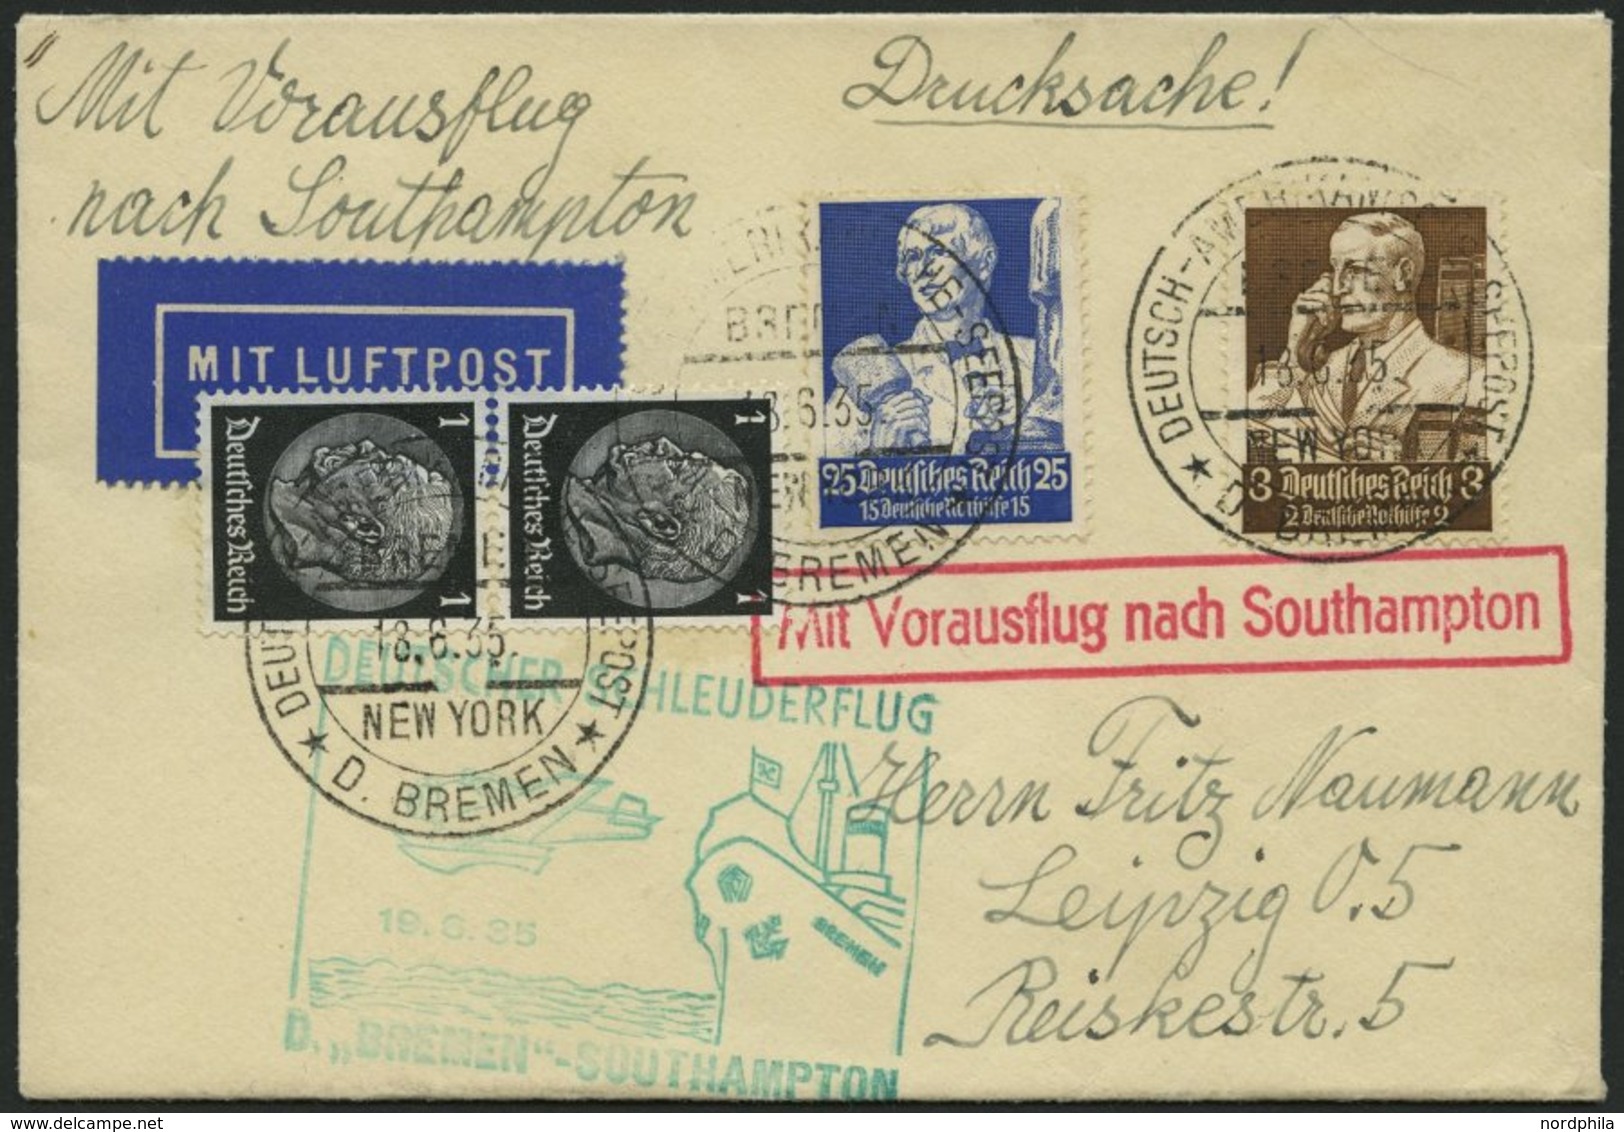 KATAPULTPOST 194c BRIEF, 19.6.1935, Bremen - Southampton, Deutsche Seepostaufgabe, Frankiert U.a. Mit Mi.Nr. 563, Drucks - Lettres & Documents